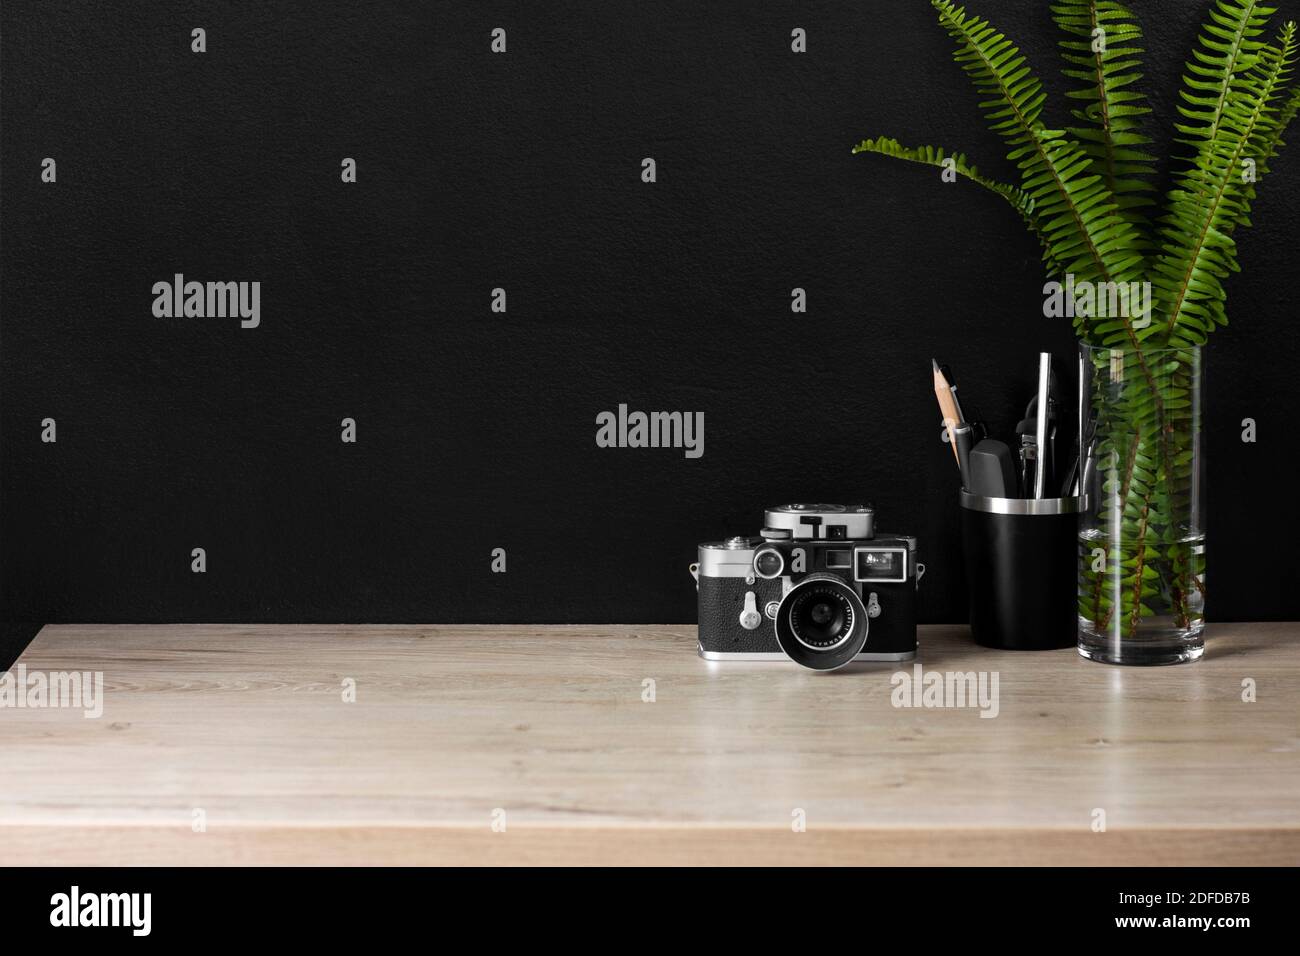 Uno spazio organizzato per l'ufficio domestico con una fotocamera vintage. Il decor color crema, nero e argento creano un'atmosfera rilassata per lavorare in modo produttivo da casa. Foto Stock